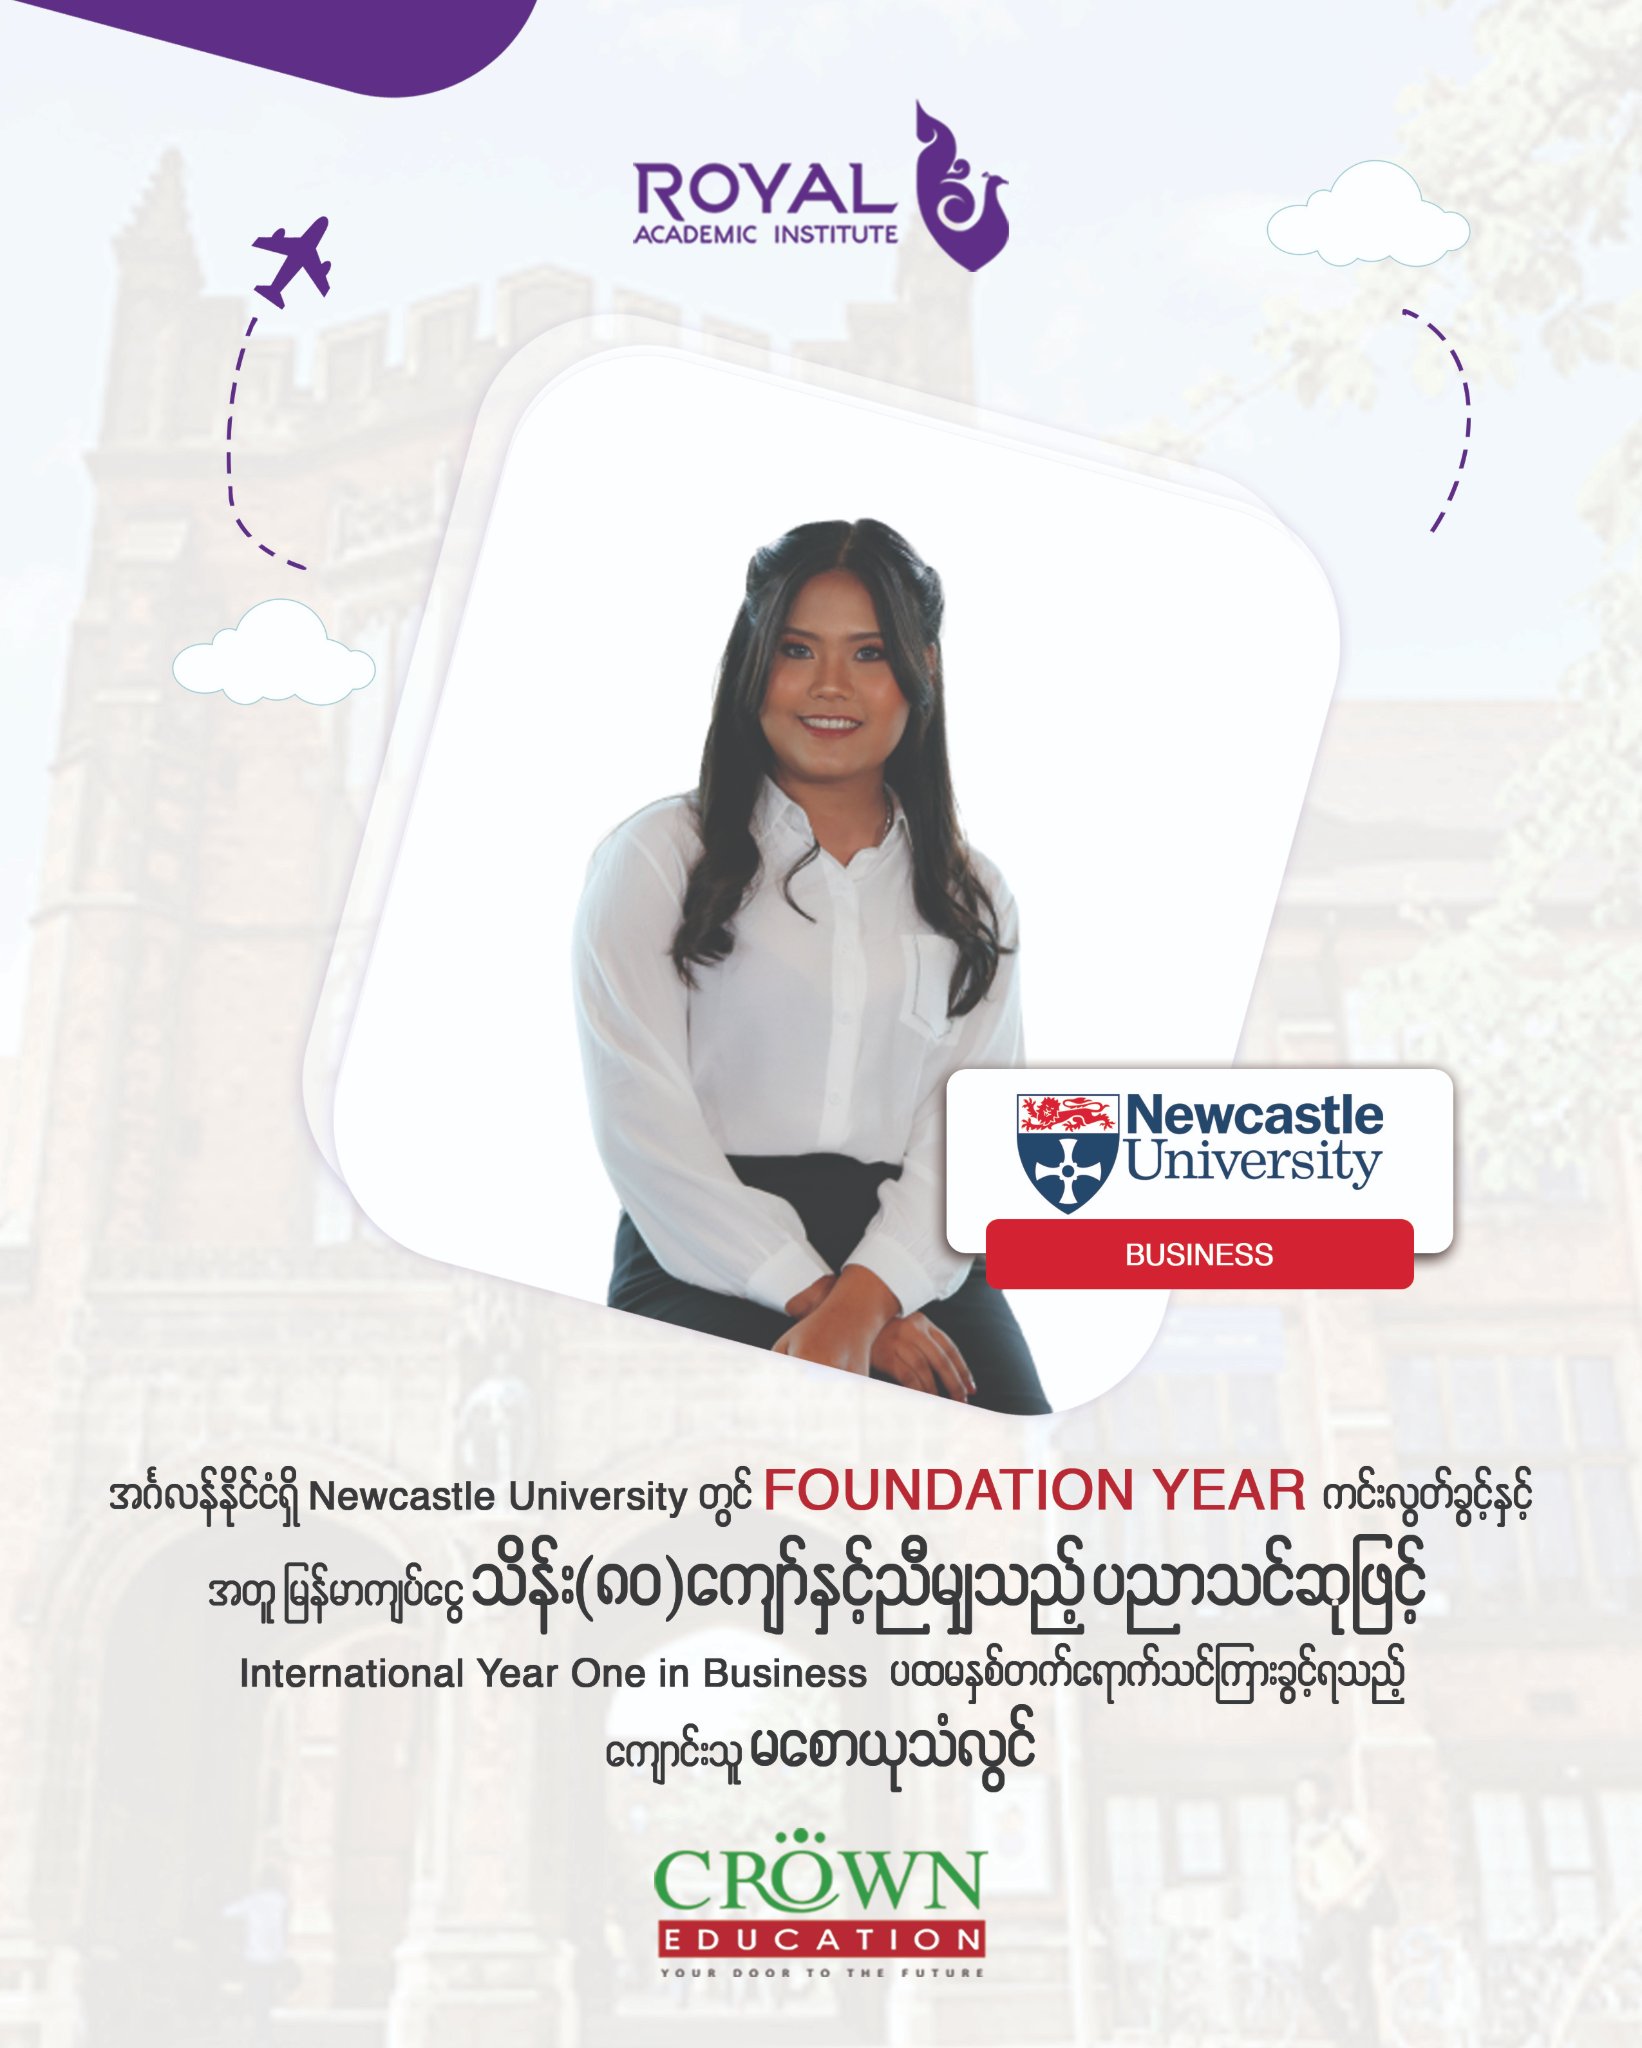 ❝အင်္ဂလန်နိုင်ငံရှိ Newcastle University တွင် Foundation Year ကင်းလွတ်ခွင့်နှင့်အတူ မြန်မာကျပ်ငွေ သိန်း (၈ဝ)ကျော်နှင့်ညီမျှသည့် ပညာသင်ဆုဖြင့် International Year One in Business ပထမနှစ်တက်ရောက်သင်ကြားခွင့်ရသည့် ကျောင်းသူ မစောယုသံလွင်❞